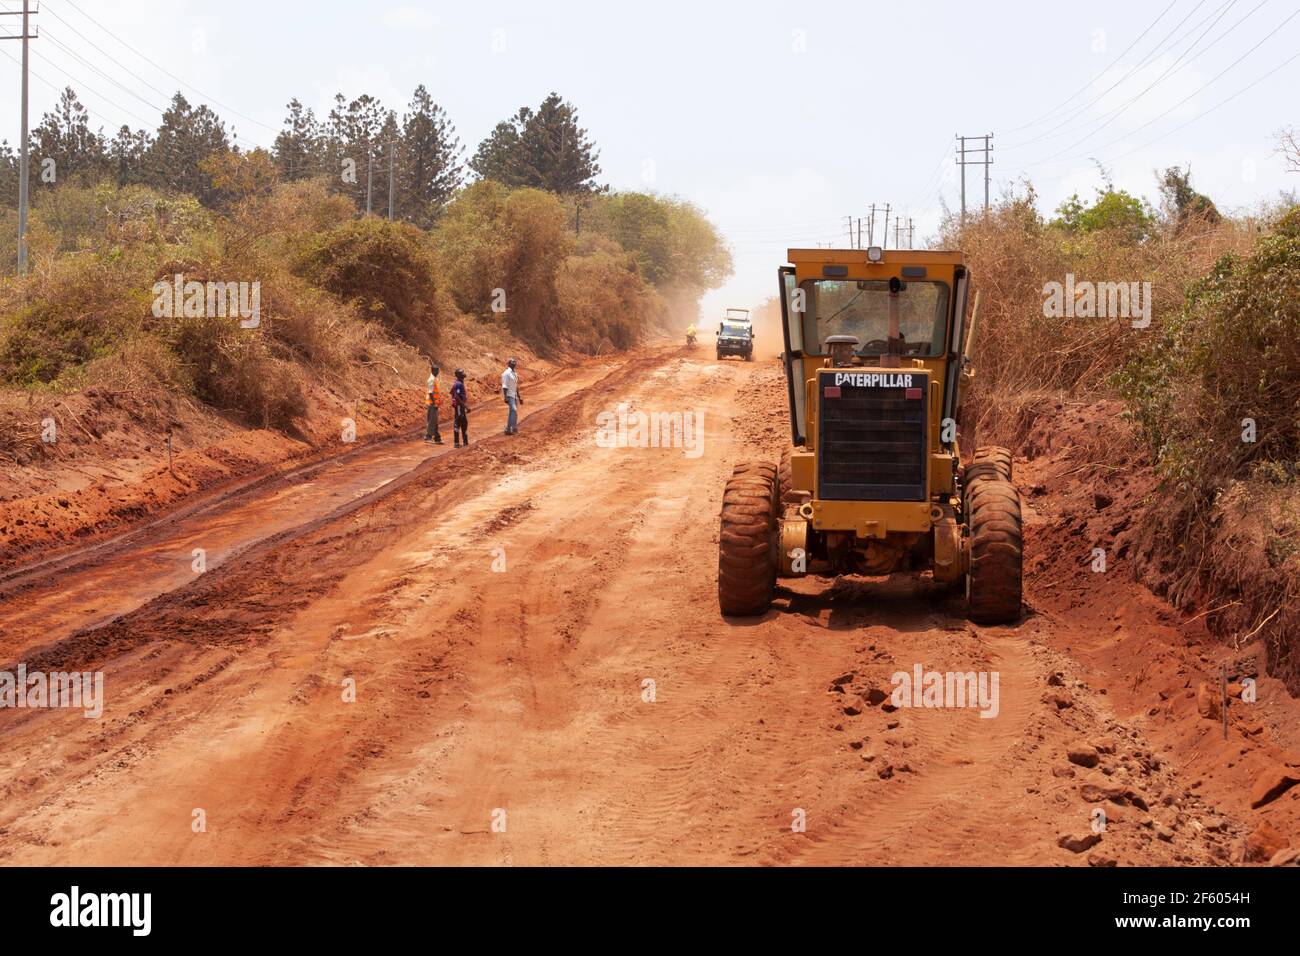 PRÈS DE MALINDI, KENYA, AFRIQUE - Construction de routes en Afrique Banque D'Images